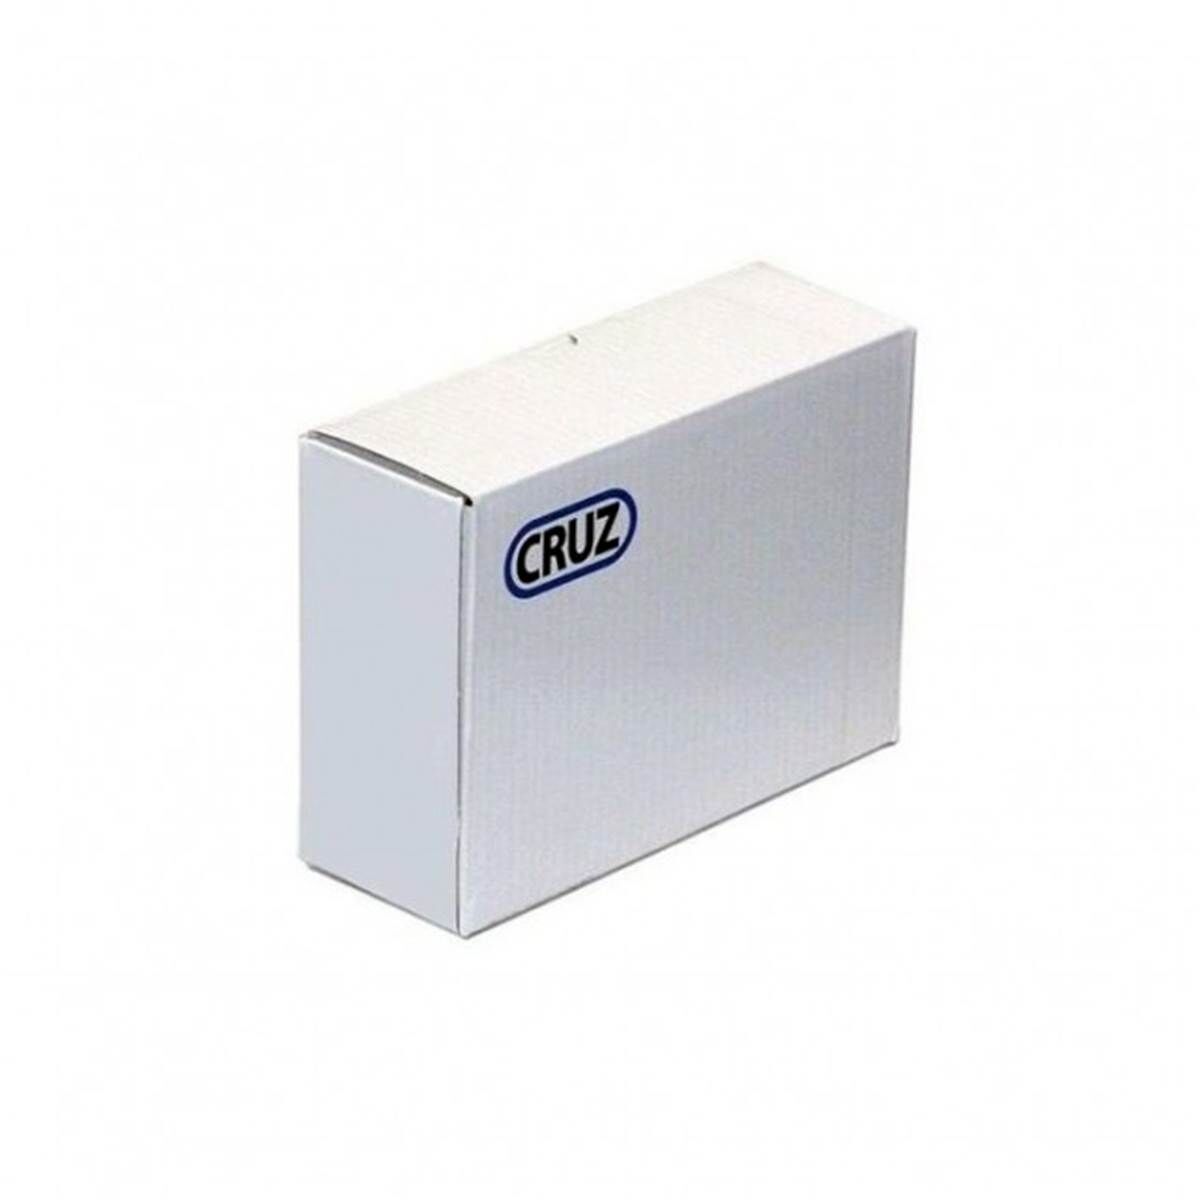 CRUZ Kit barras de techo  opti+ 935-791